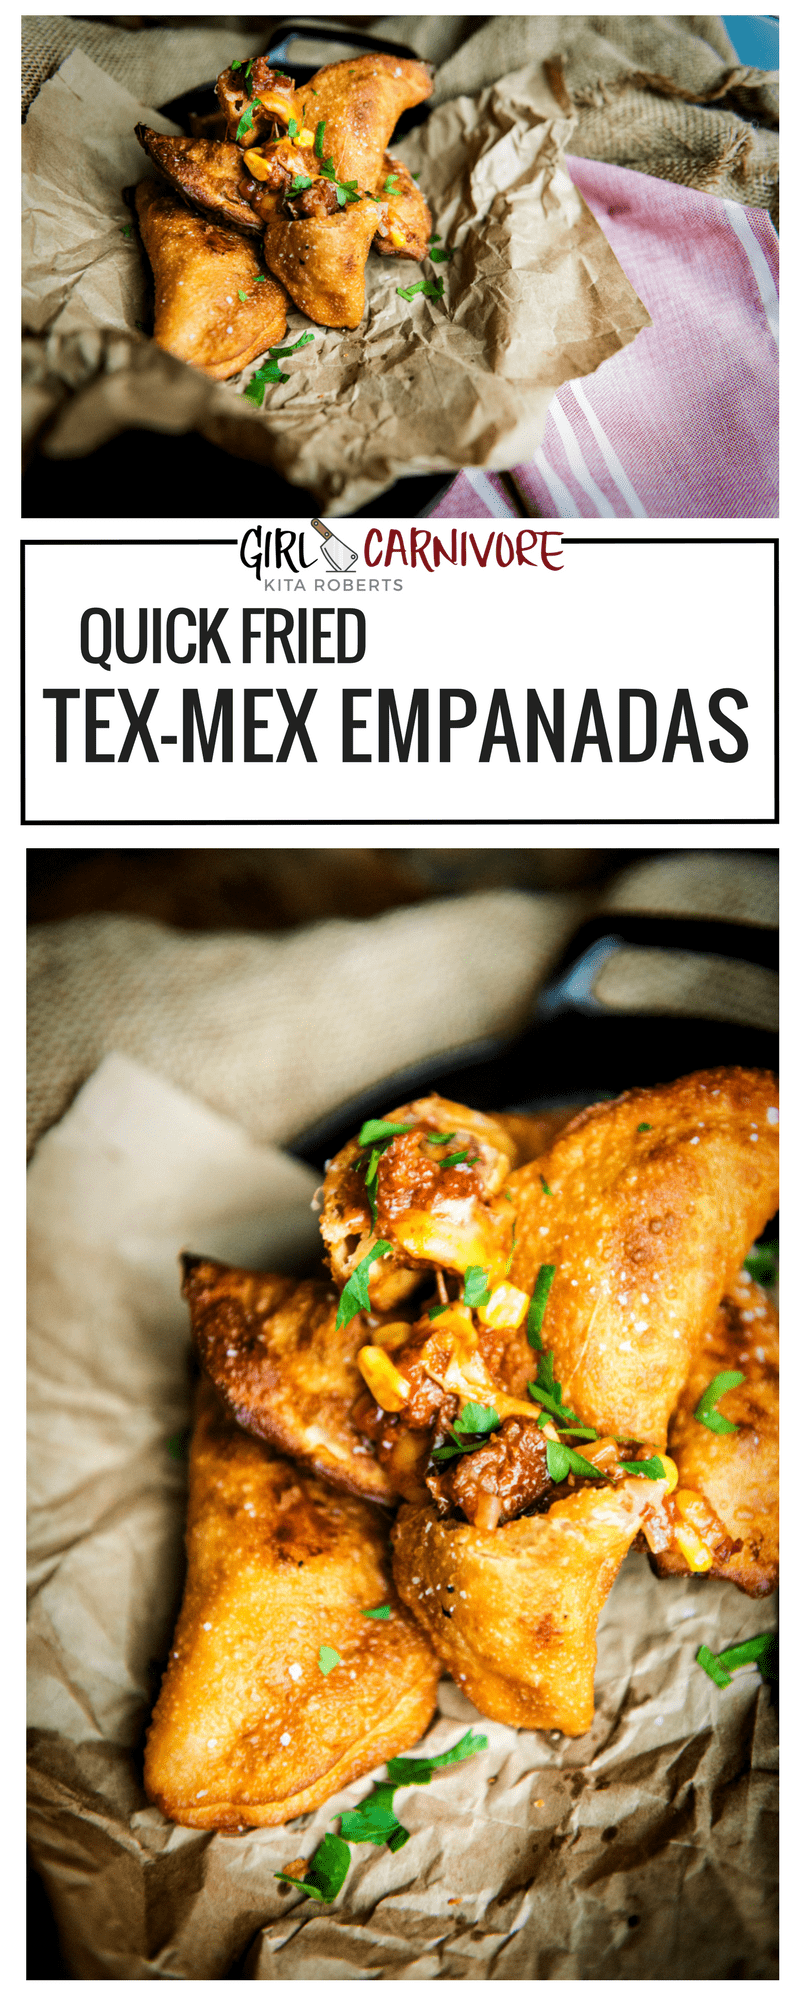 Quick Fried Tex-Mex Empanads Recipe at GirlCarnivore.com